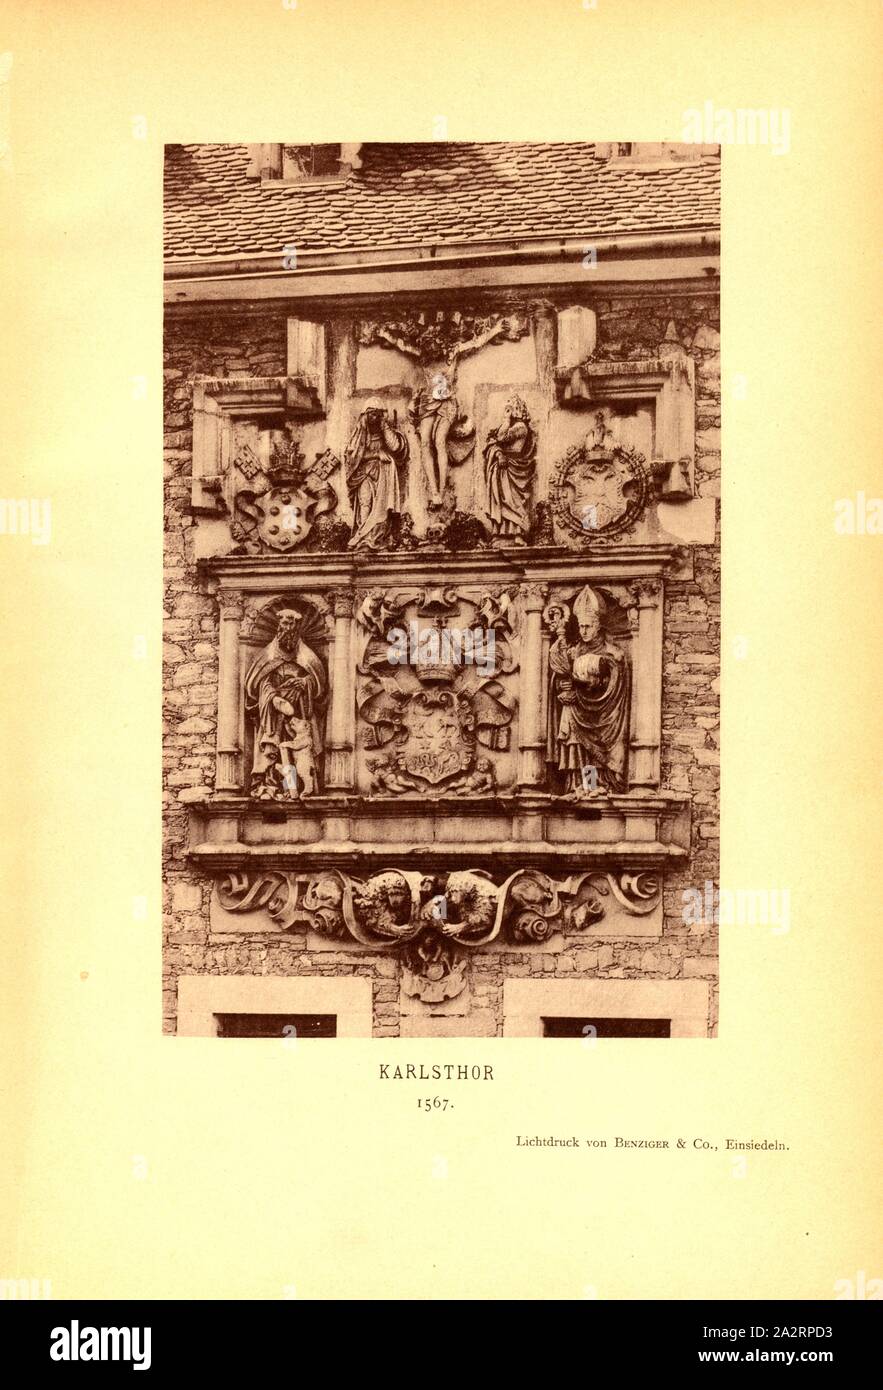 Karlsthor 1567, Relief of Baltus von Seilmannsweiler on the Karlstor in St.  Gallen (Switzerland), signed: Benziger & Co, Fig. 4, according to p. 14,  Verlagsanstalt Benziger & Co. Einsiedeln (imp.), 1889, Section